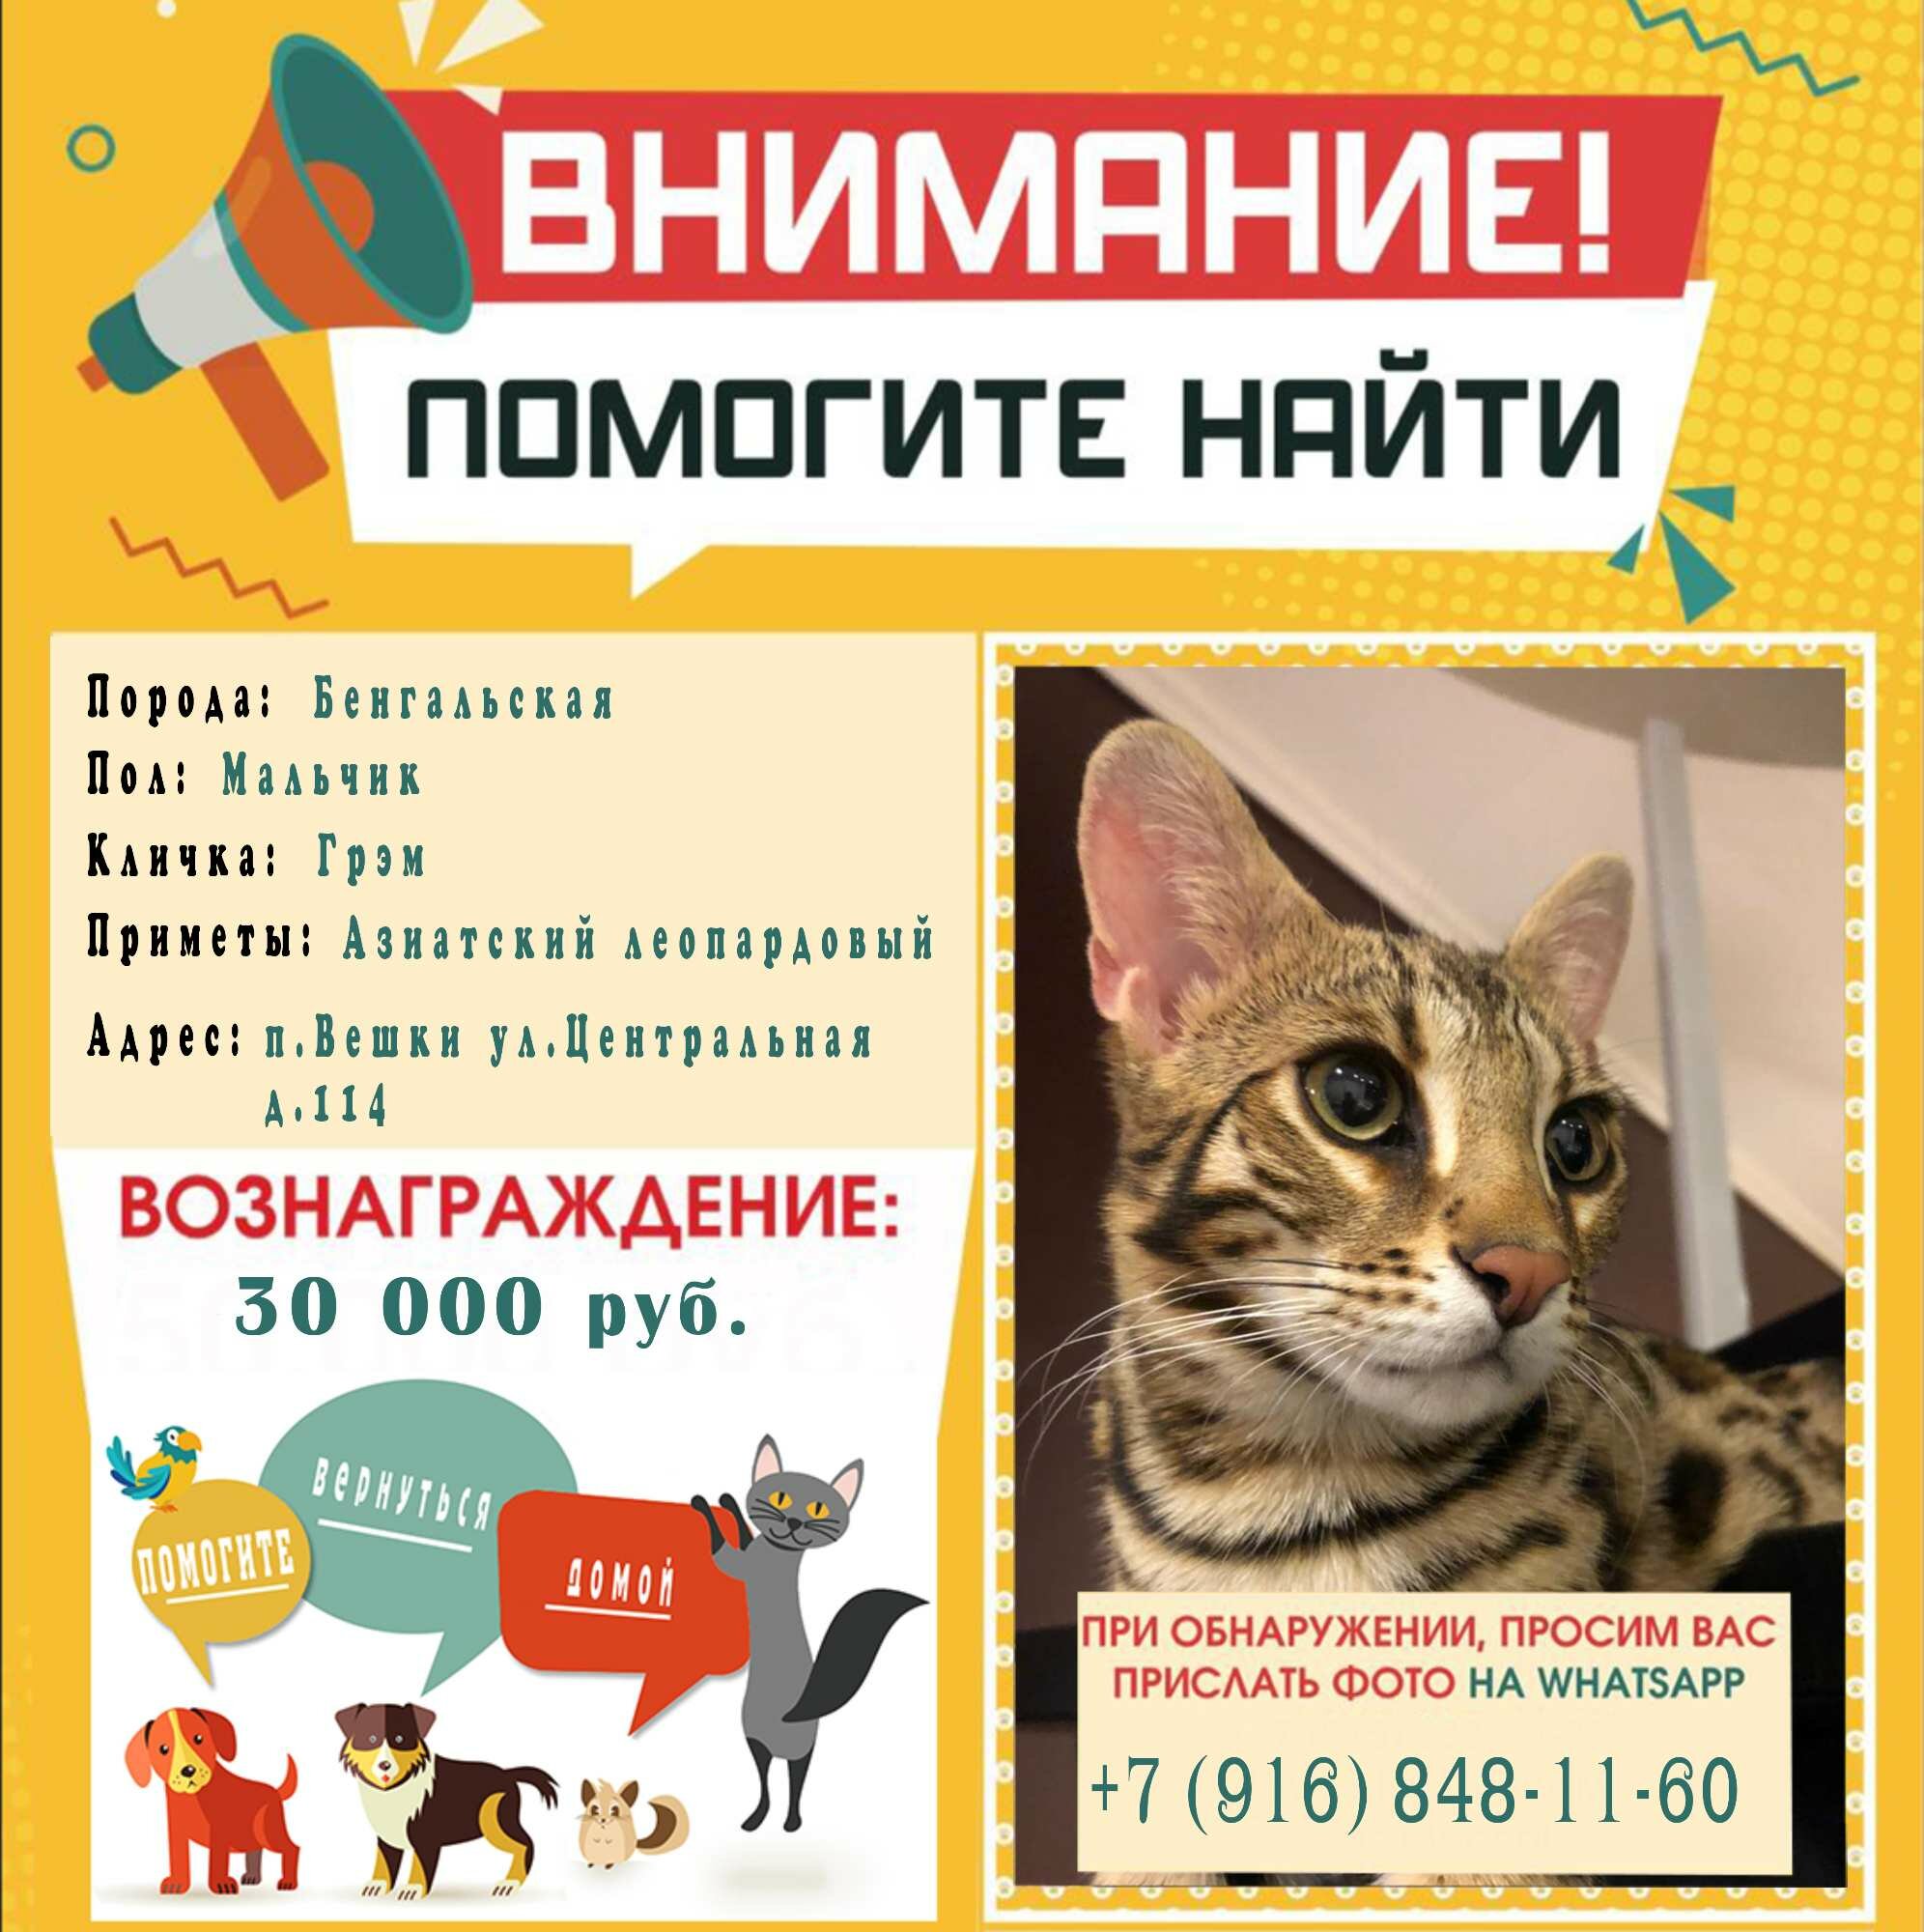 Нашли и подобрали кошку, куда разместить объявления? Как найти хозяина  пропавшей кошки?» — Яндекс Кью